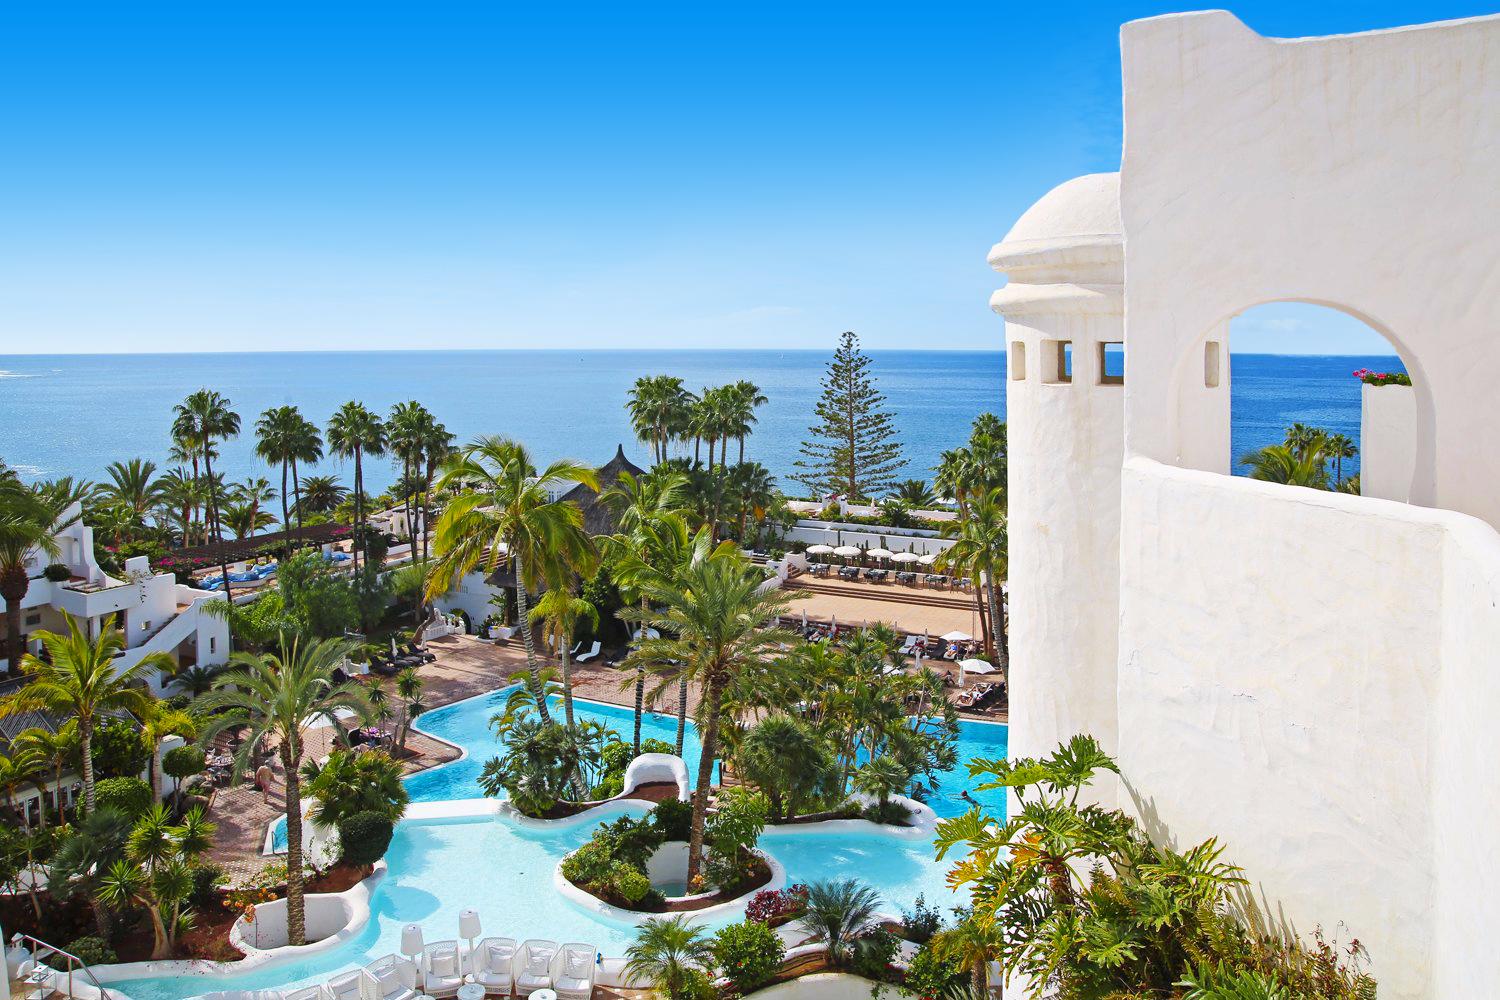 Dreams Jardin Tropical Resort en Spa - Costa Adeje - Canarische Eilanden